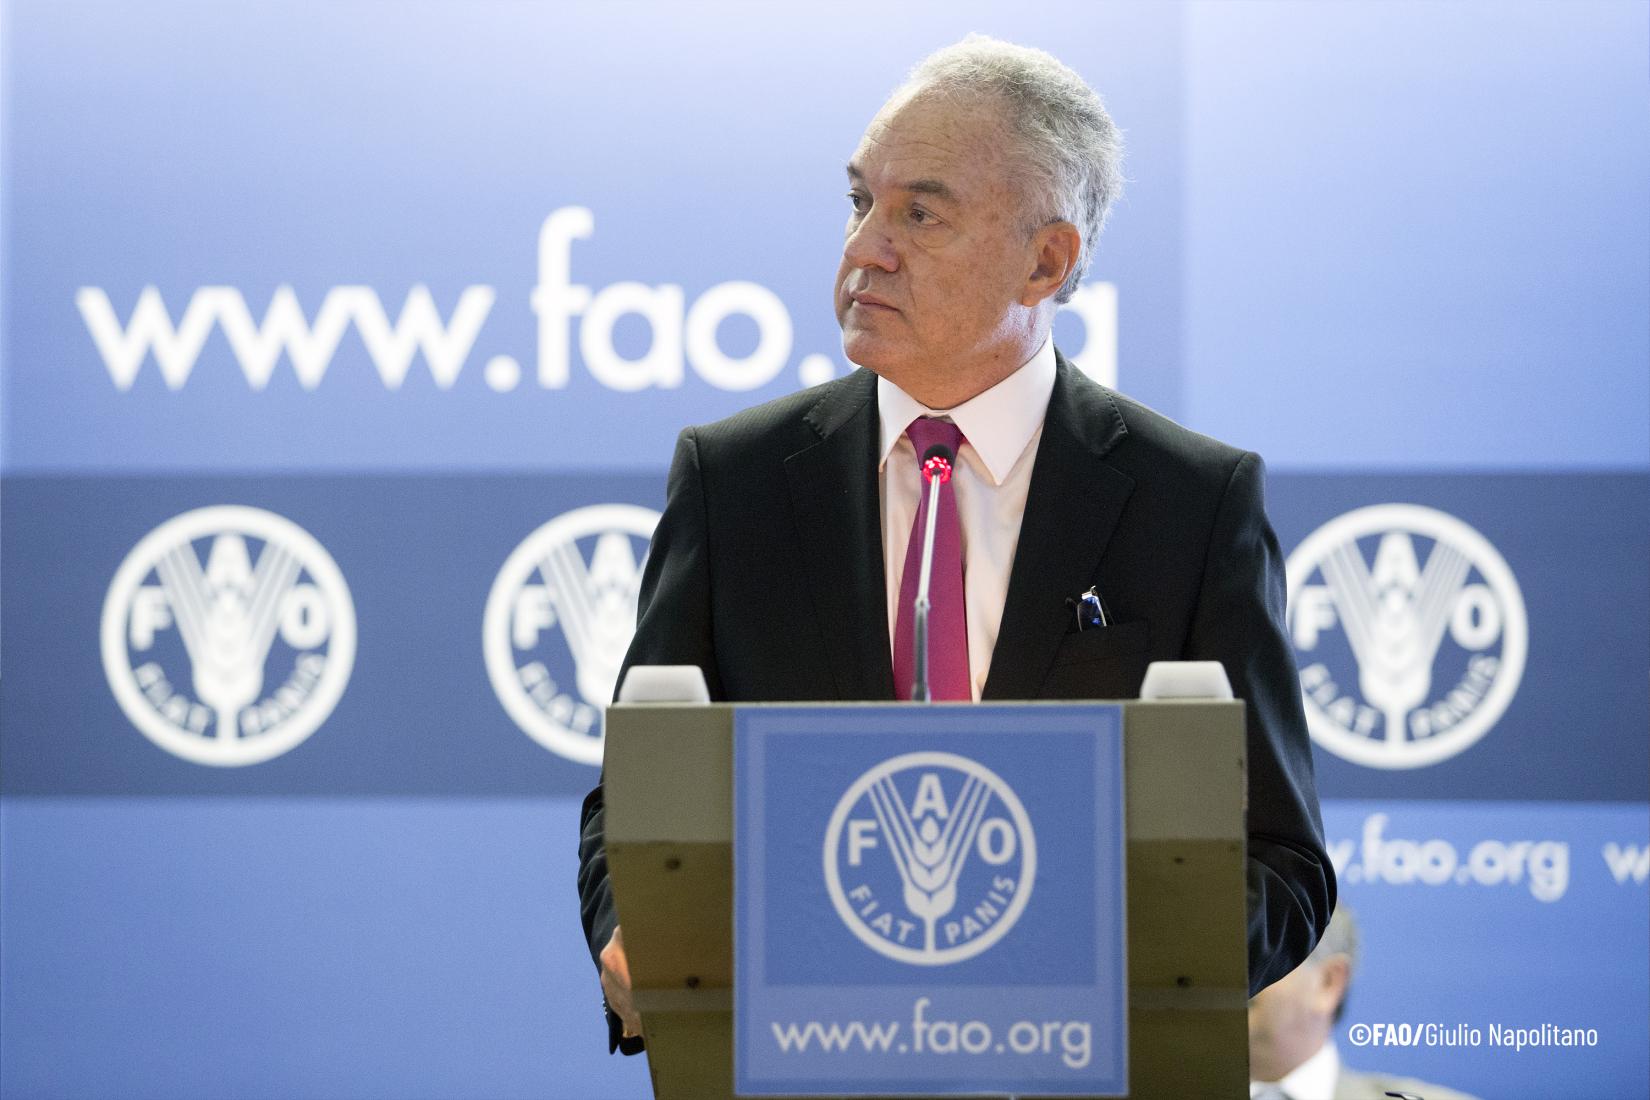 Lubetkin é subdiretor geral da FAO desde 2017.